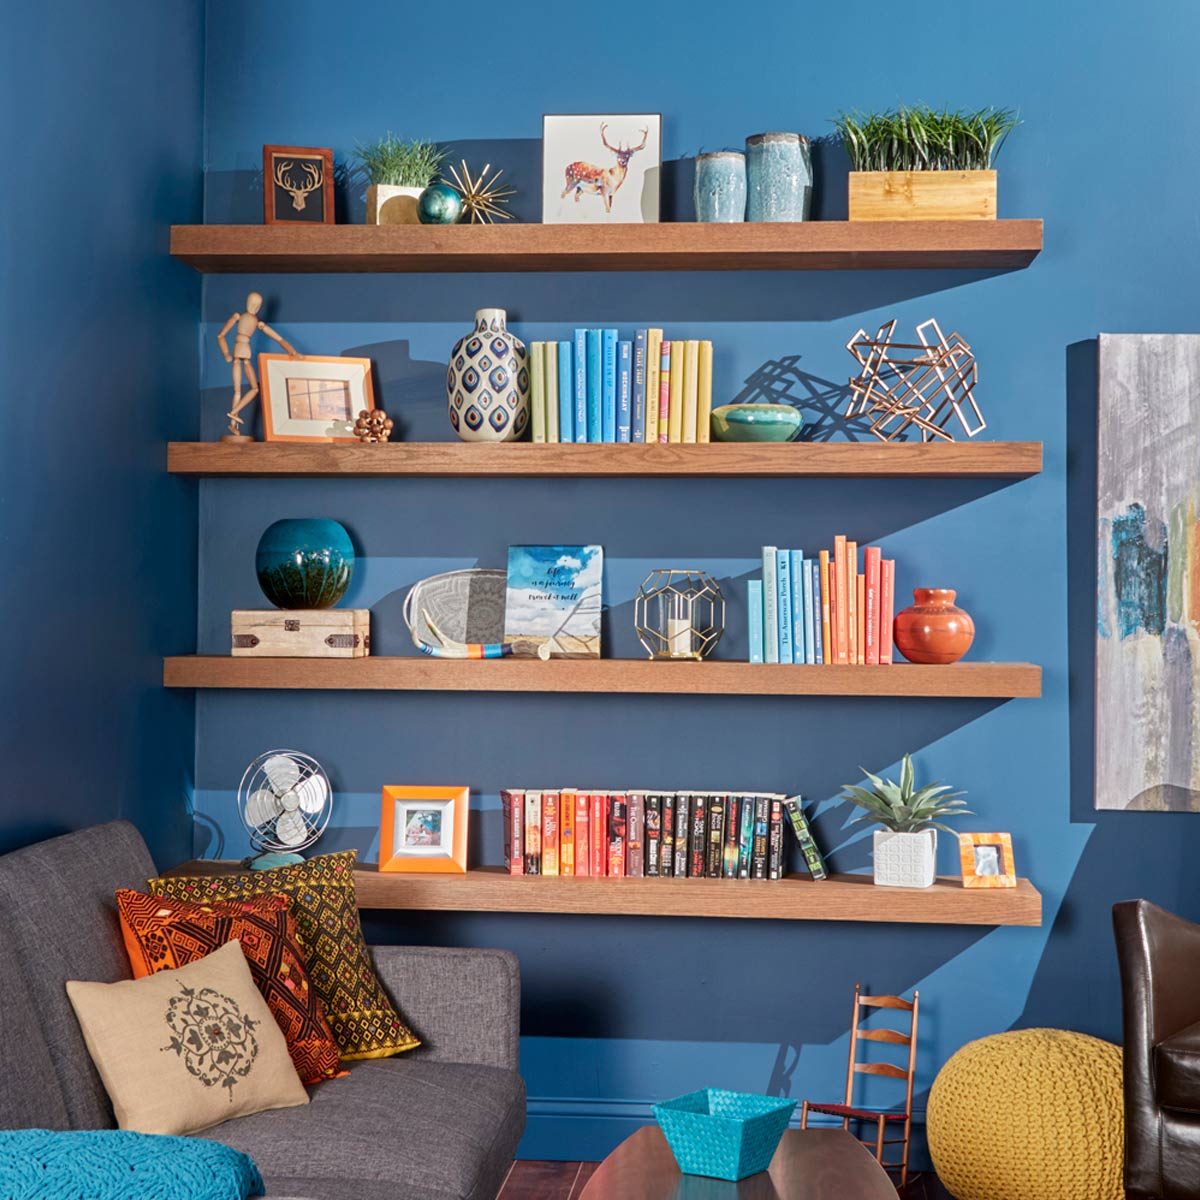 $20 DIY Floating Shelves  Floating shelves diy, Floating shelves, Home  decor